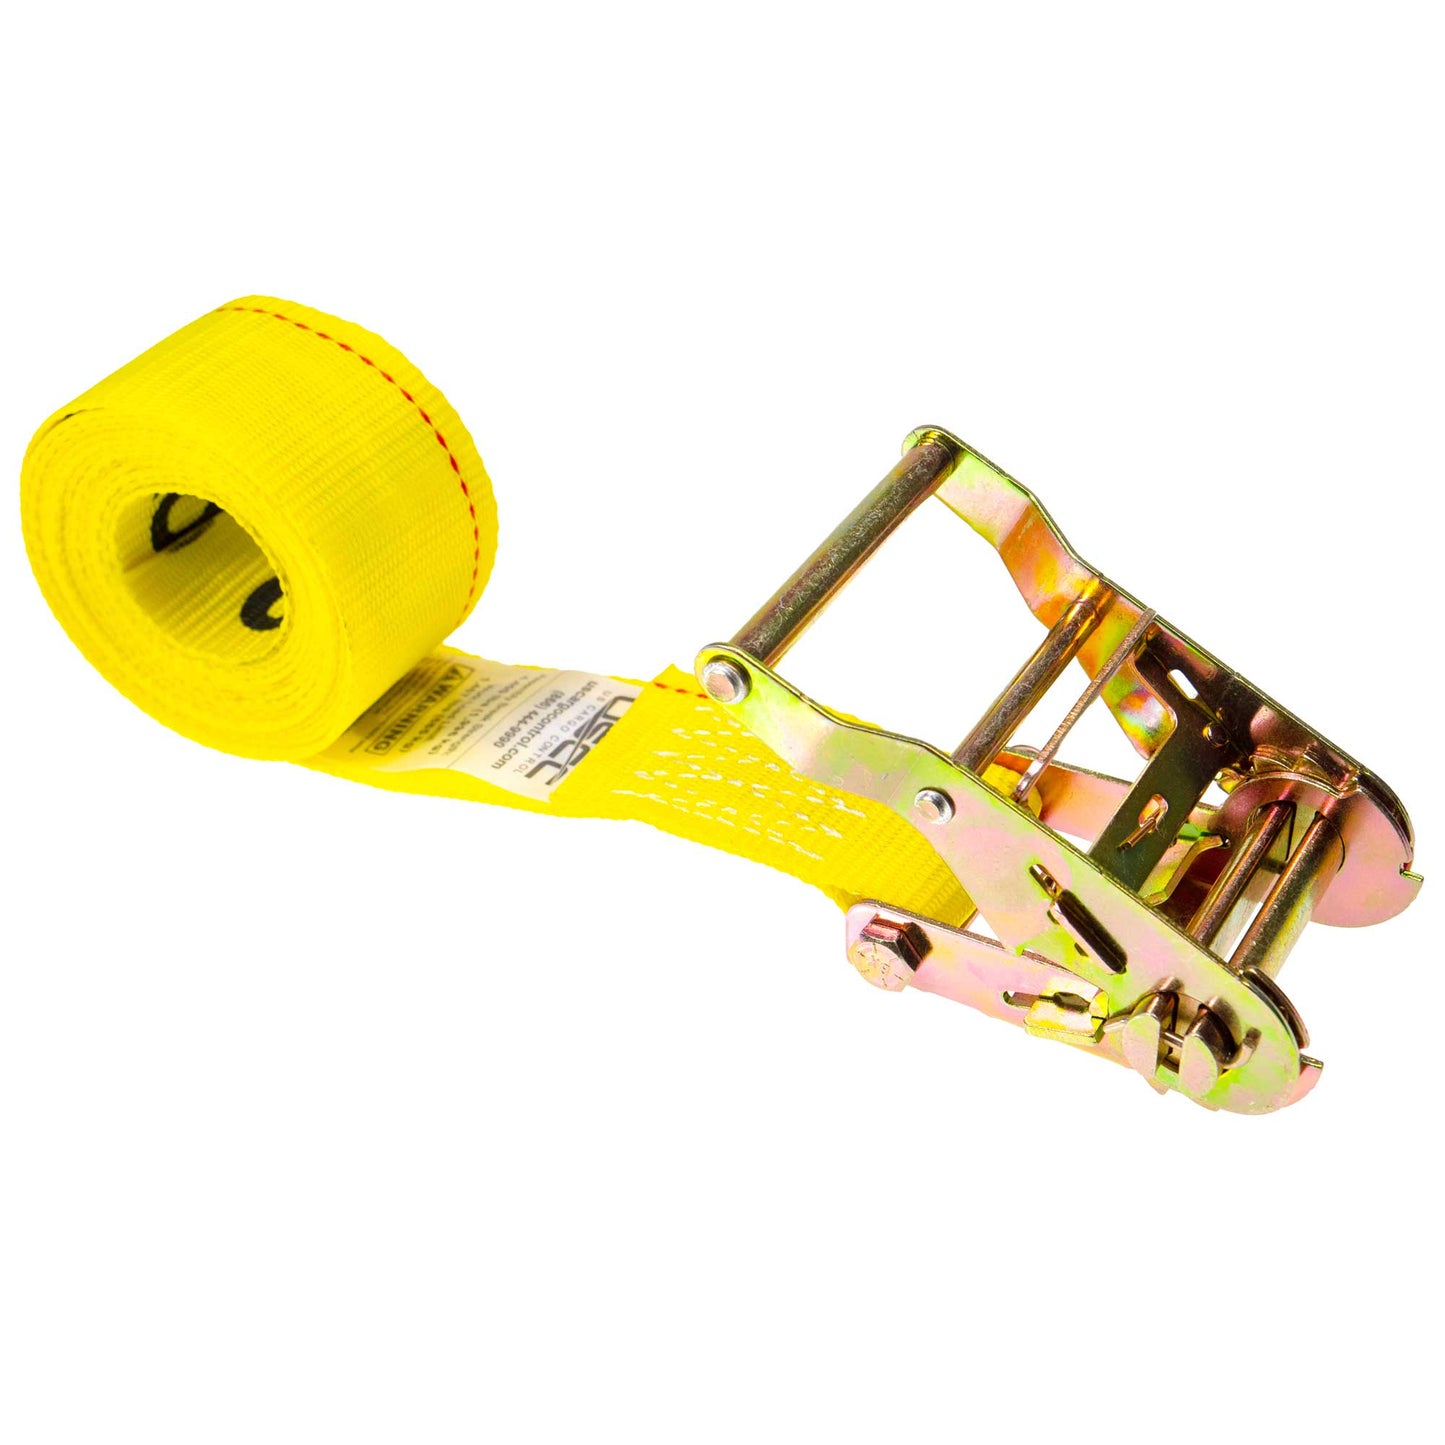 20' endless ratchet strap -  2" yellow endless ratchet strap